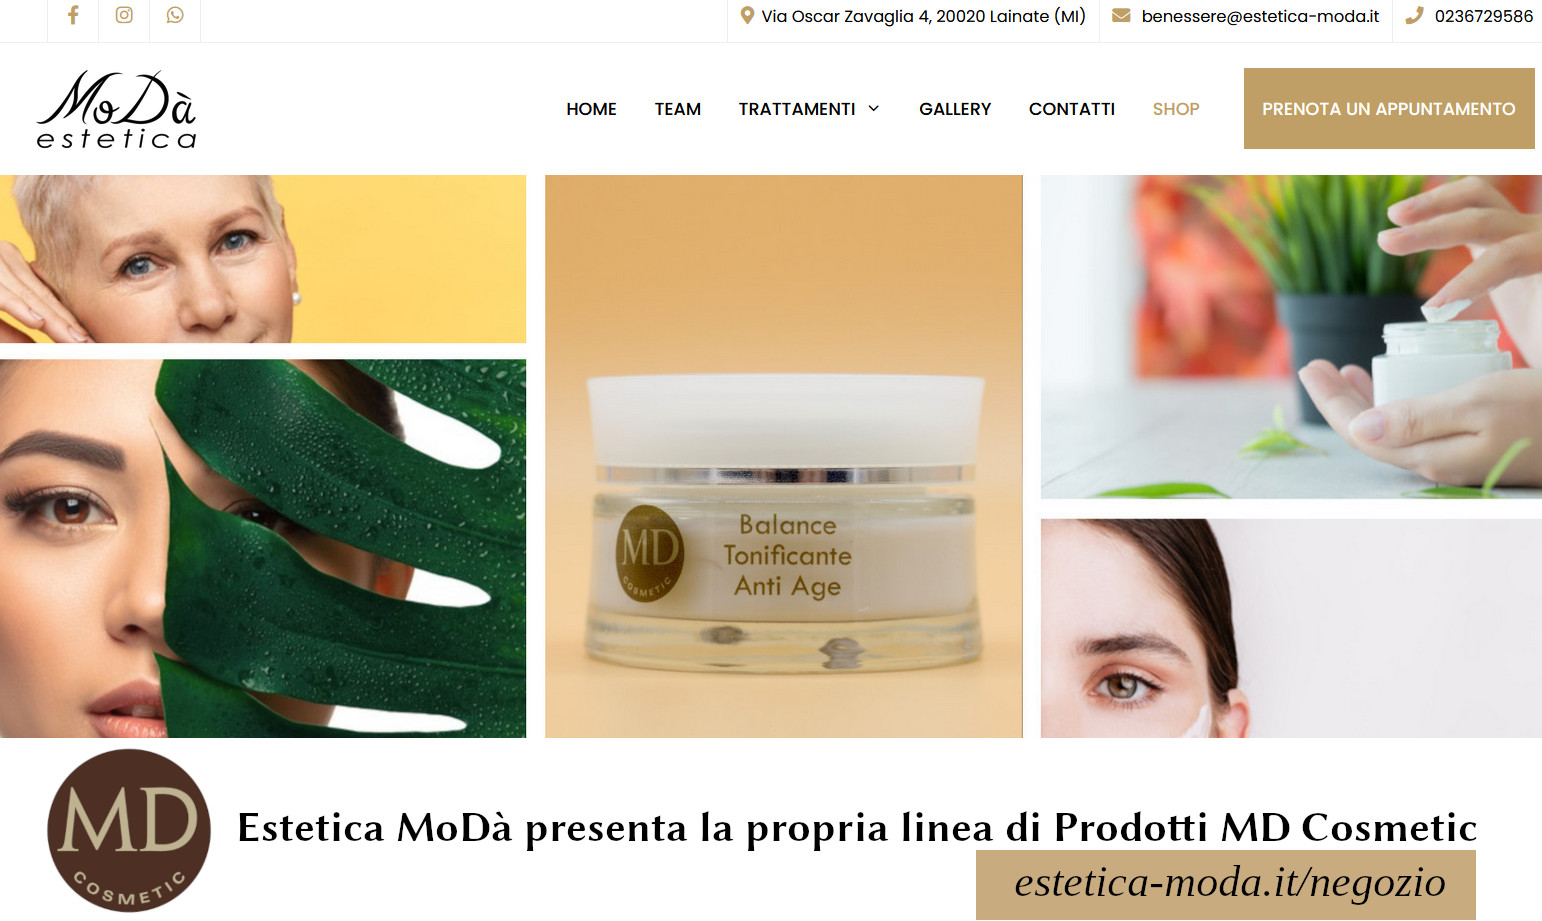 Affida la tua bellezza a MD Cosmetic, il brand 100% made in Italy creato da professioniste del settore estetico